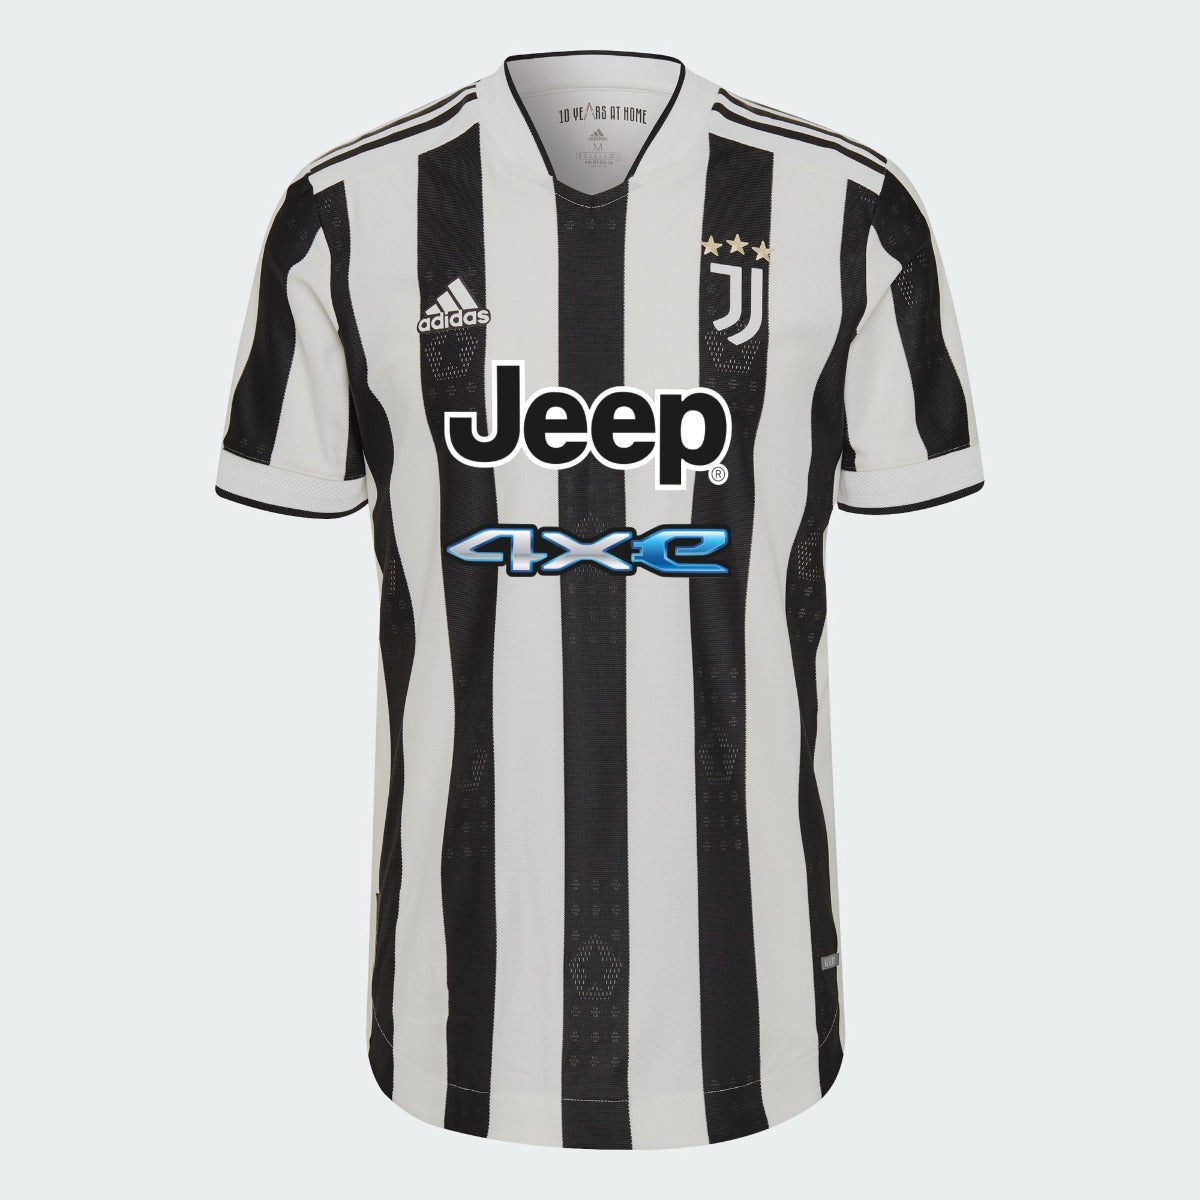 Adidas, Maglia autentica Adidas 2021-22 Juventus Home - Bianco-Nero